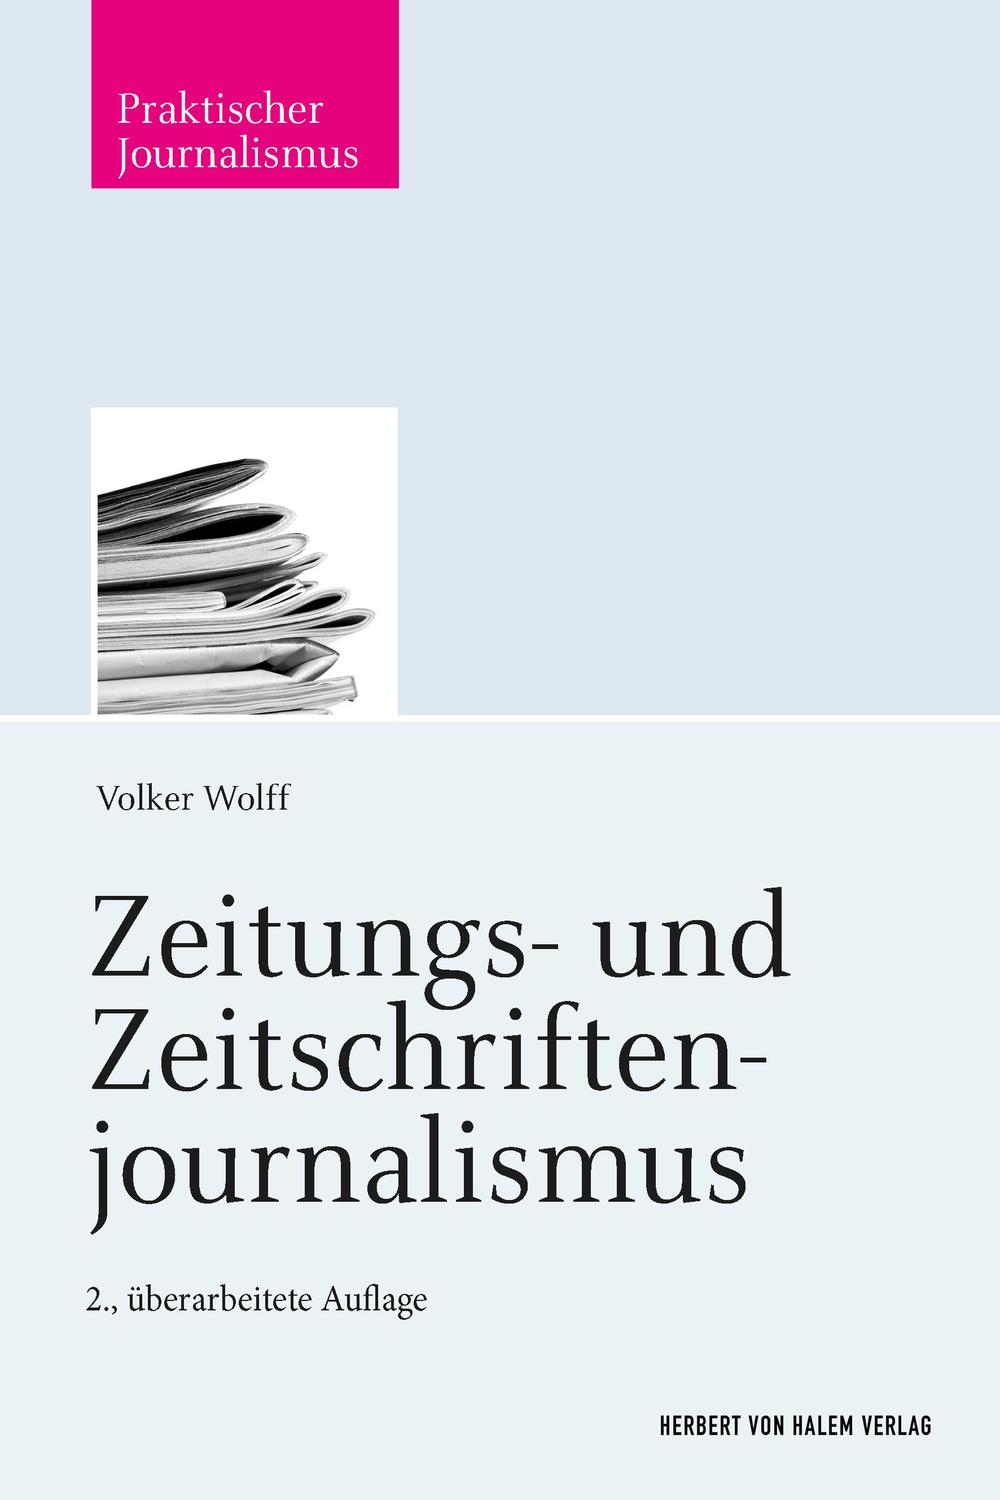 Zeitungs- und Zeitschriftenjournalismus - Volker Wolff